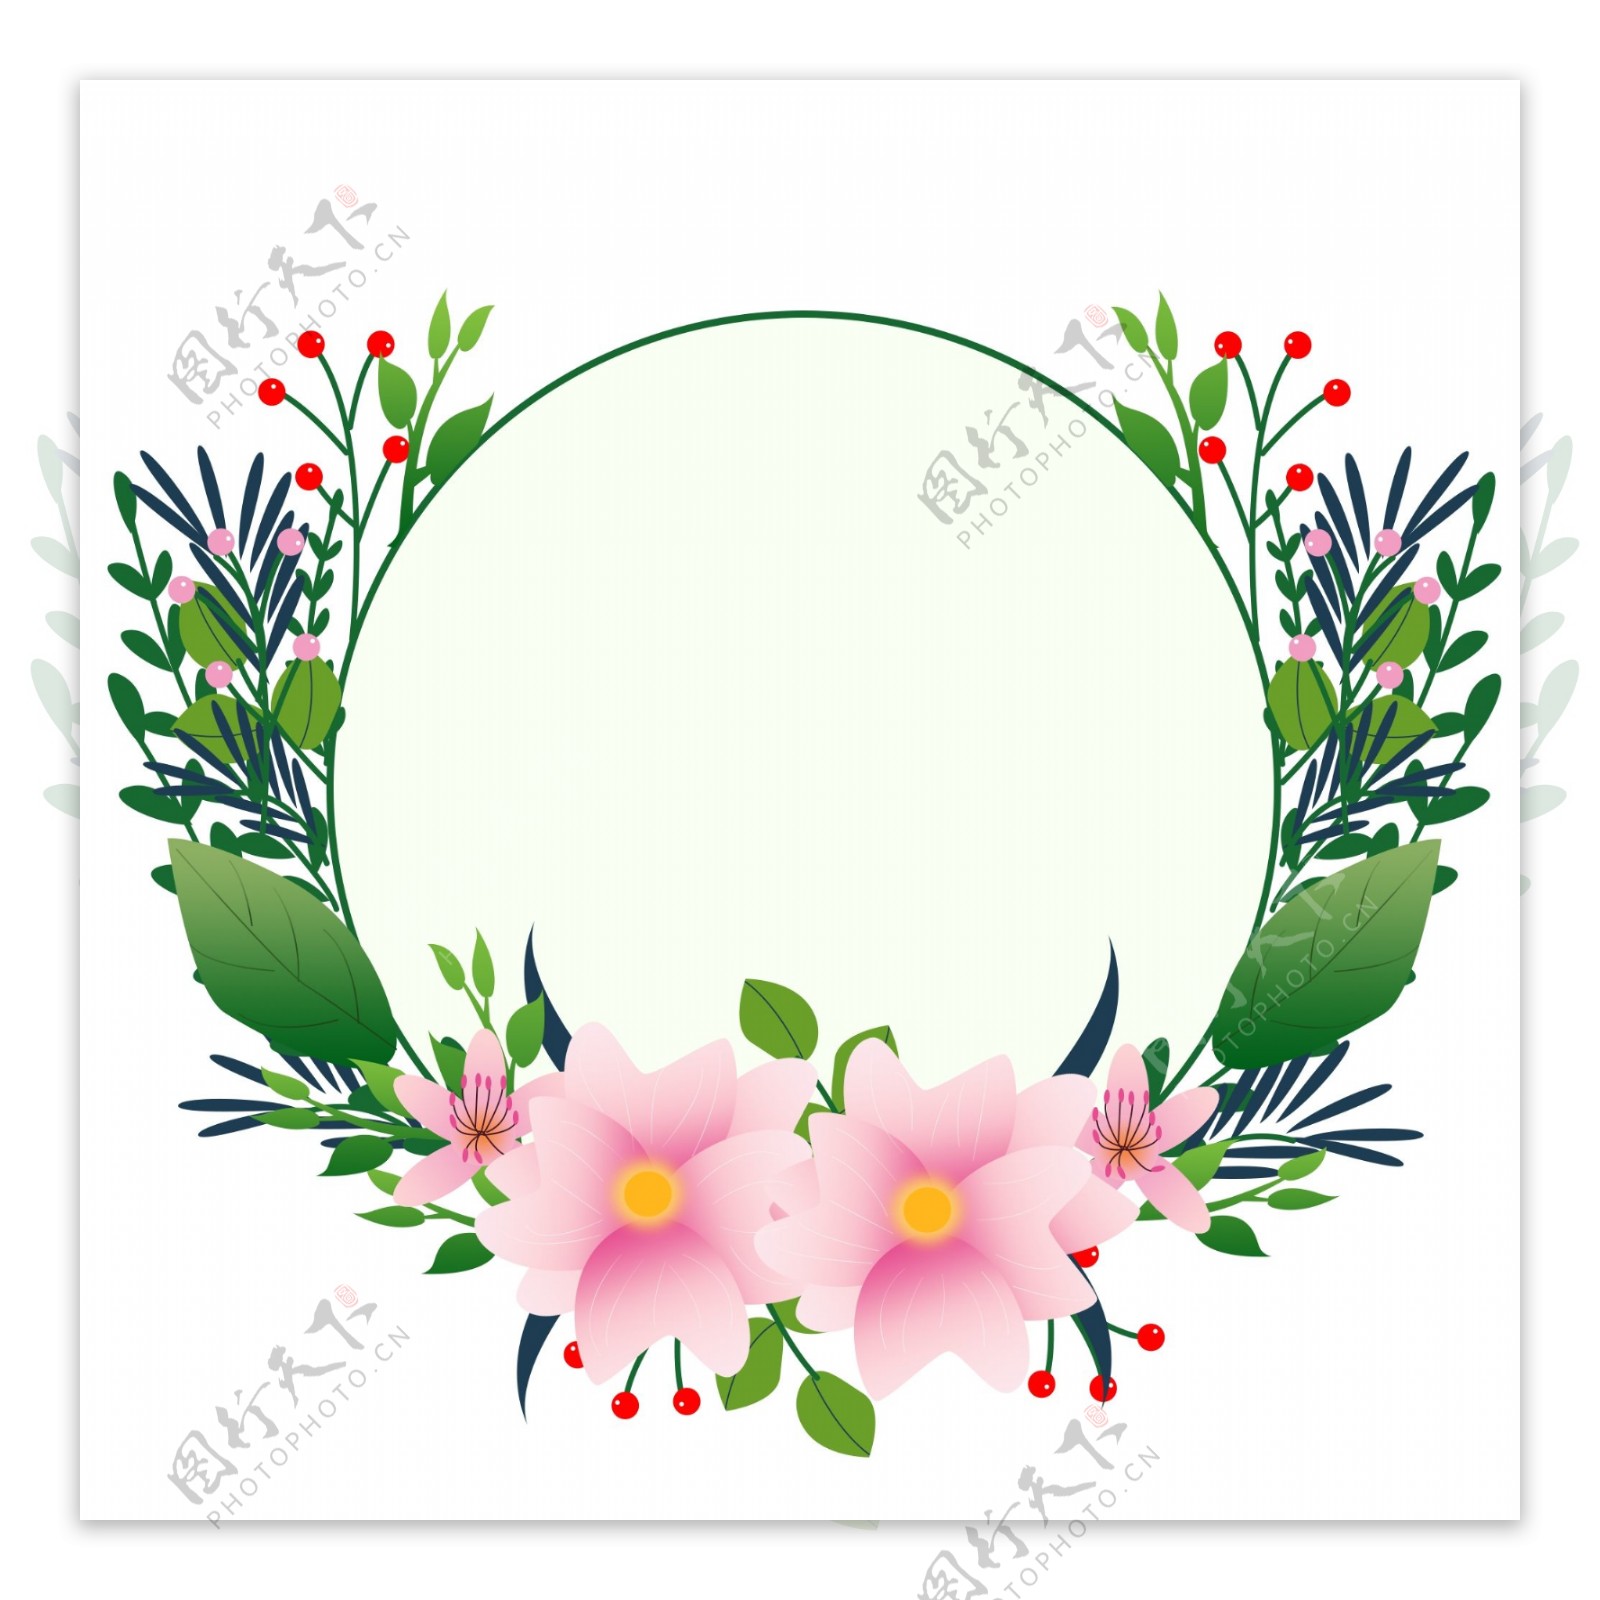 手绘绿色花卉圆形边框设计元素